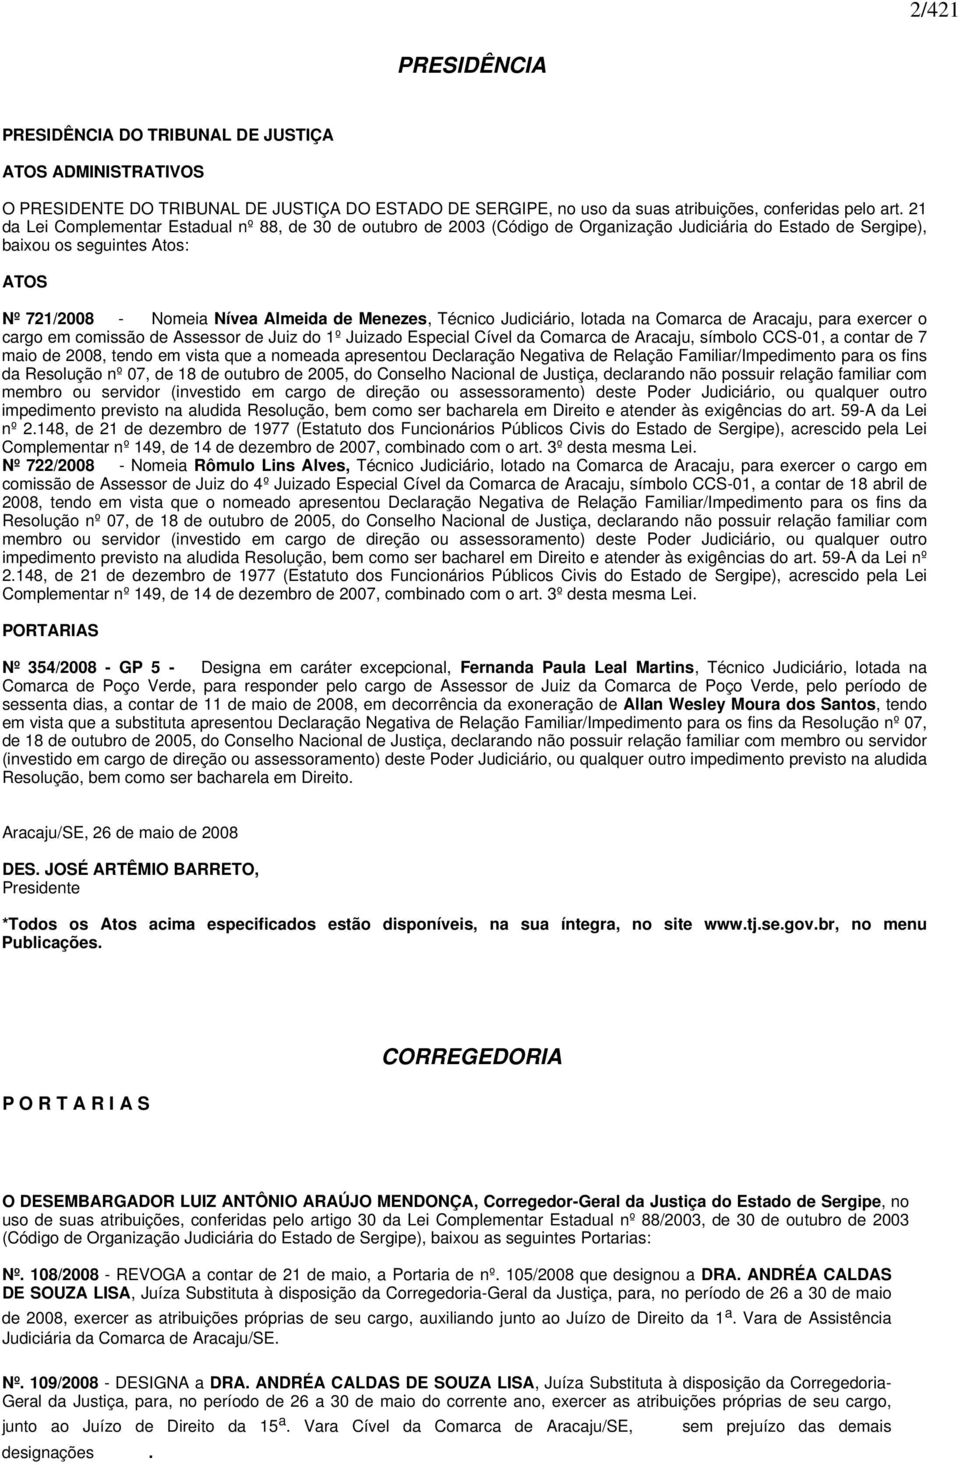 Técnico Judiciário, lotada na Comarca de Aracaju, para exercer o cargo em comissão de Assessor de Juiz do 1º Juizado Especial Cível da Comarca de Aracaju, símbolo CCS-01, a contar de 7 maio de 2008,